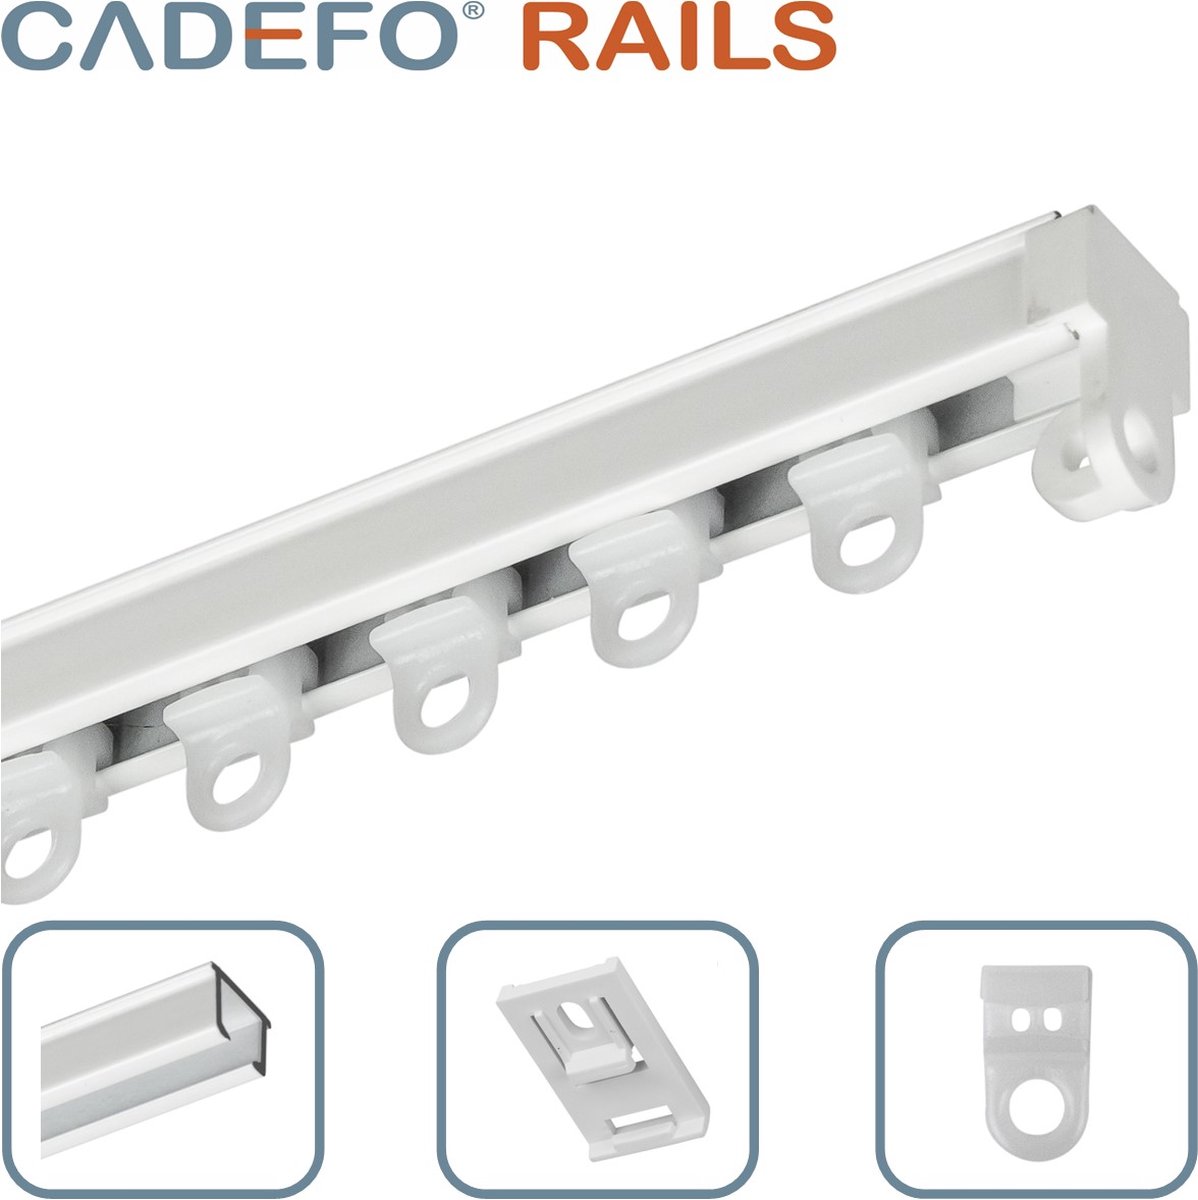 CADEFO RAILS (501 - 550 cm) Gordijnrails - Compleet op maat! - UIT 1 STUK - Leverbaar tot 6 meter - Plafondbevestiging - Lengte 501 cm